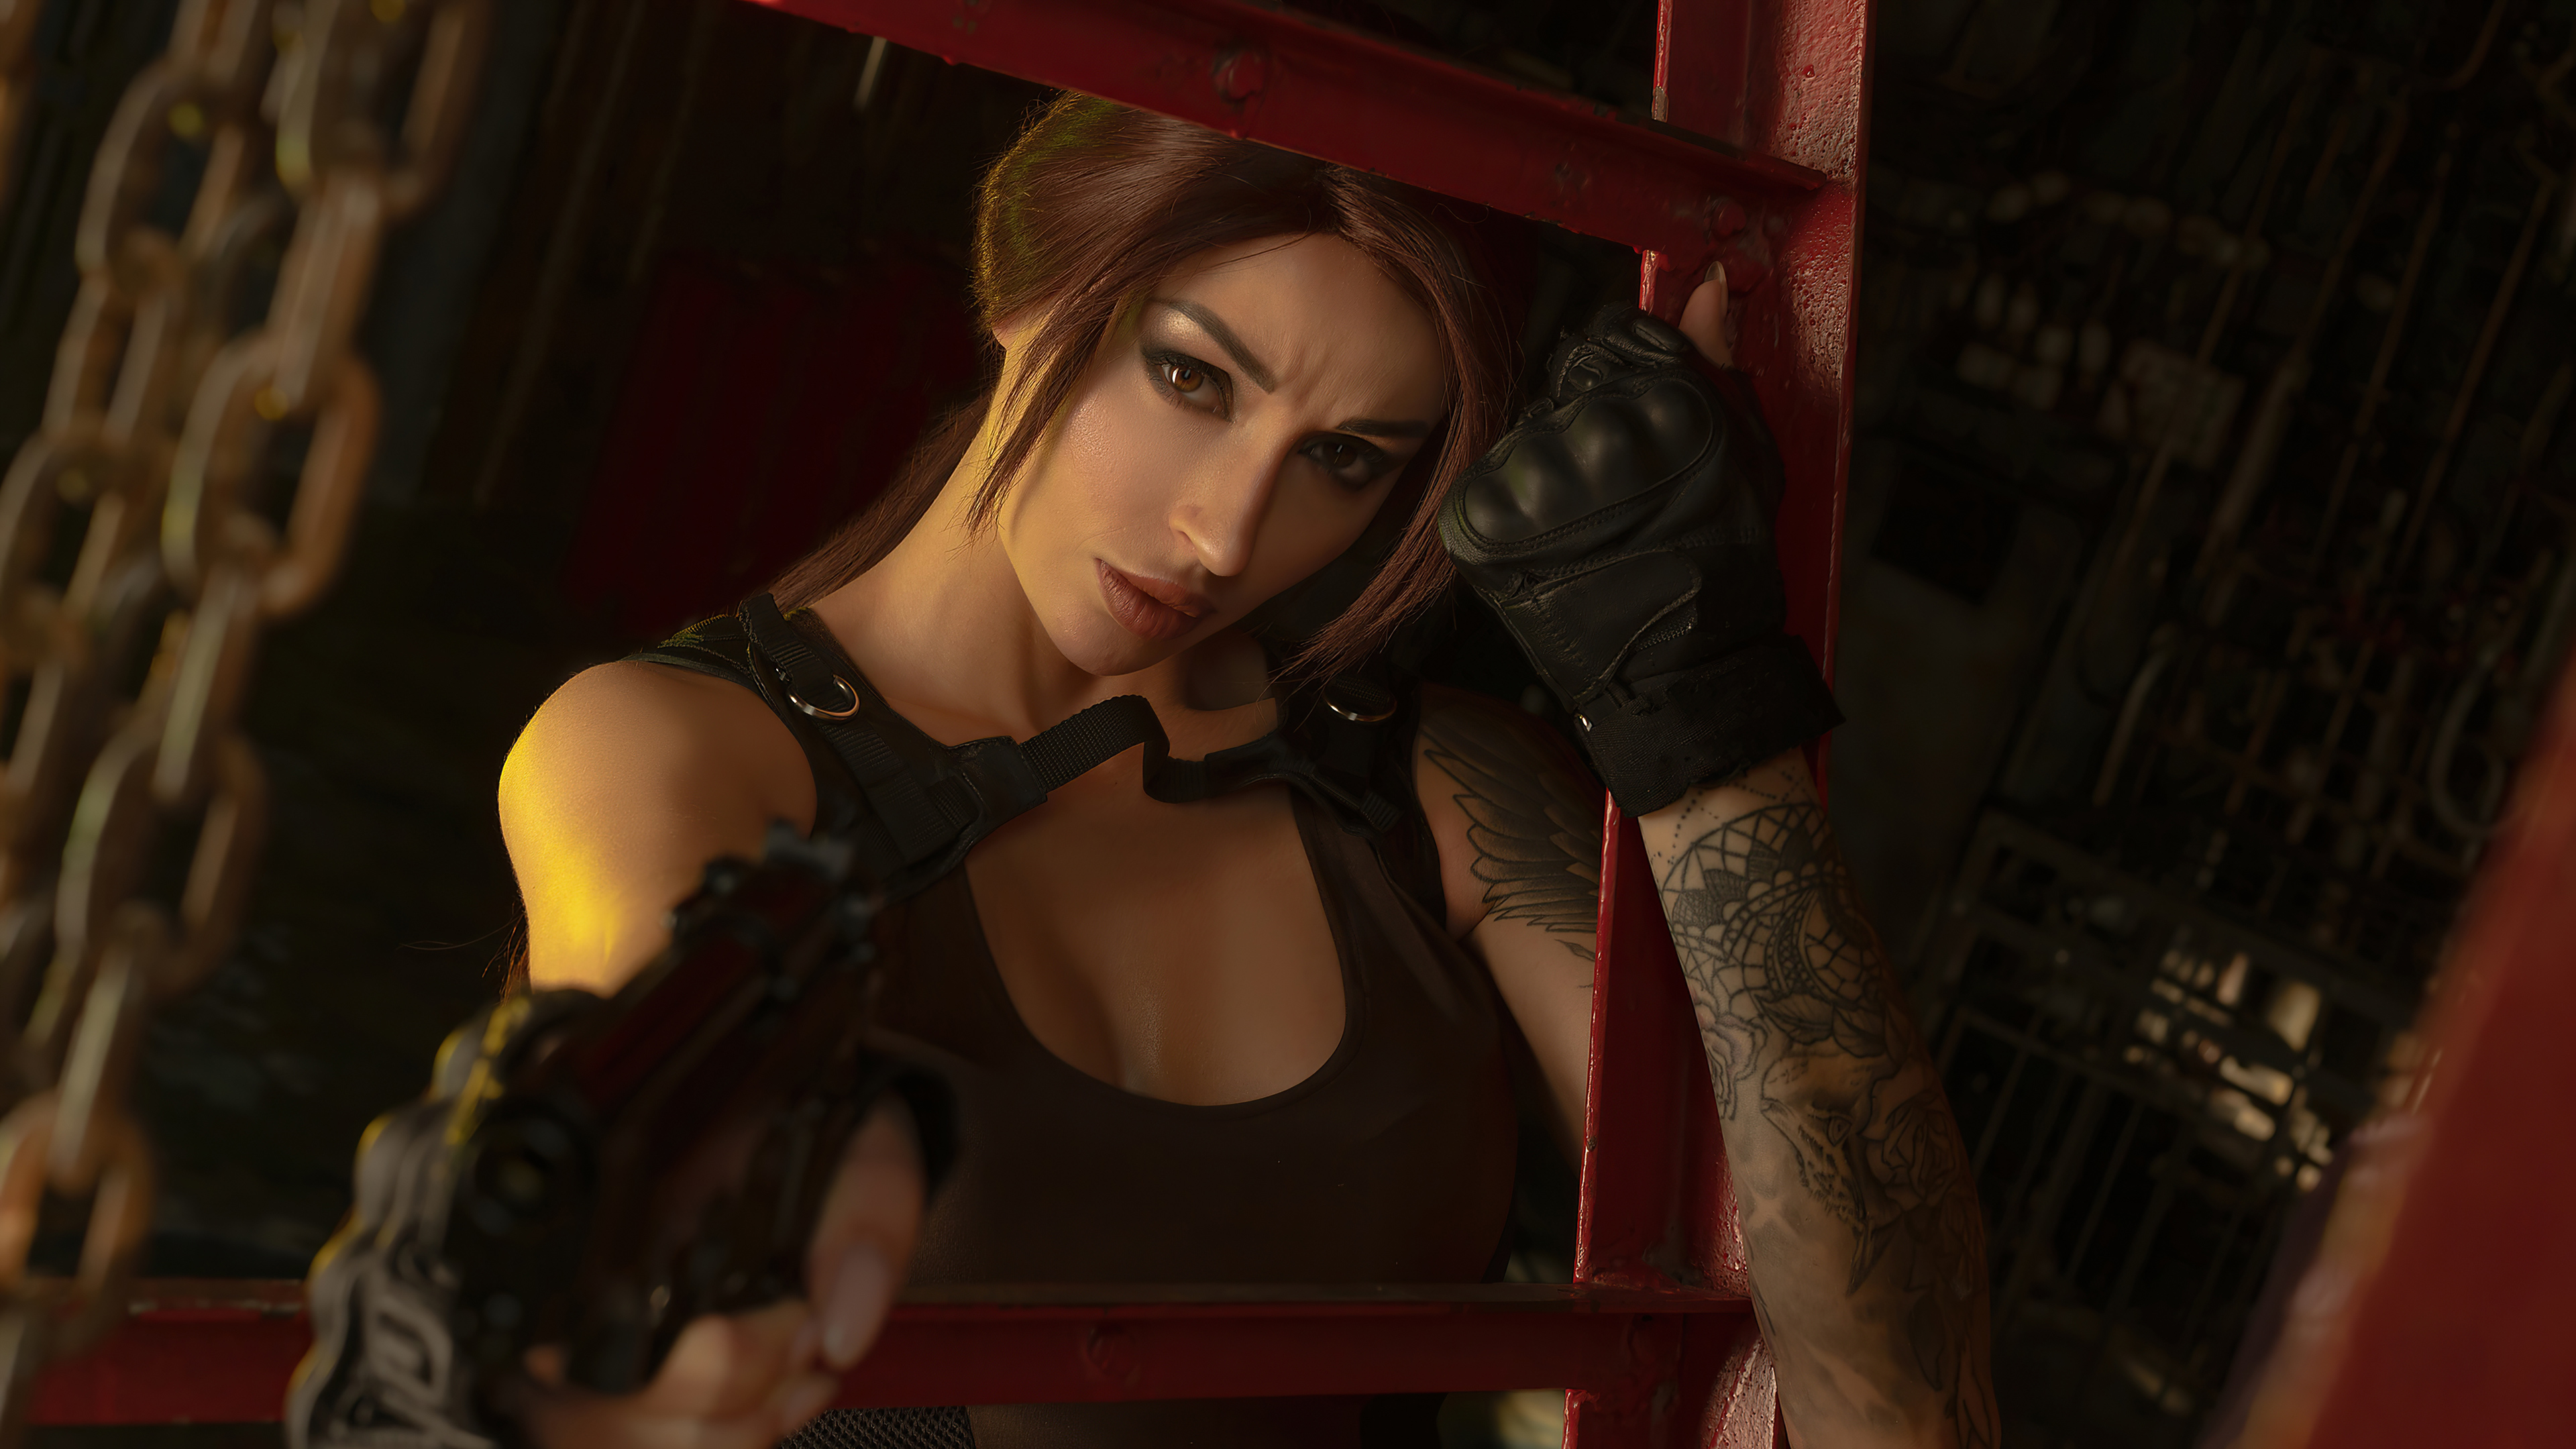 Descarga gratuita de fondo de pantalla para móvil de Morena, Tomb Raider, Tatuaje, Mujeres, Lara Croft, Cosplay.